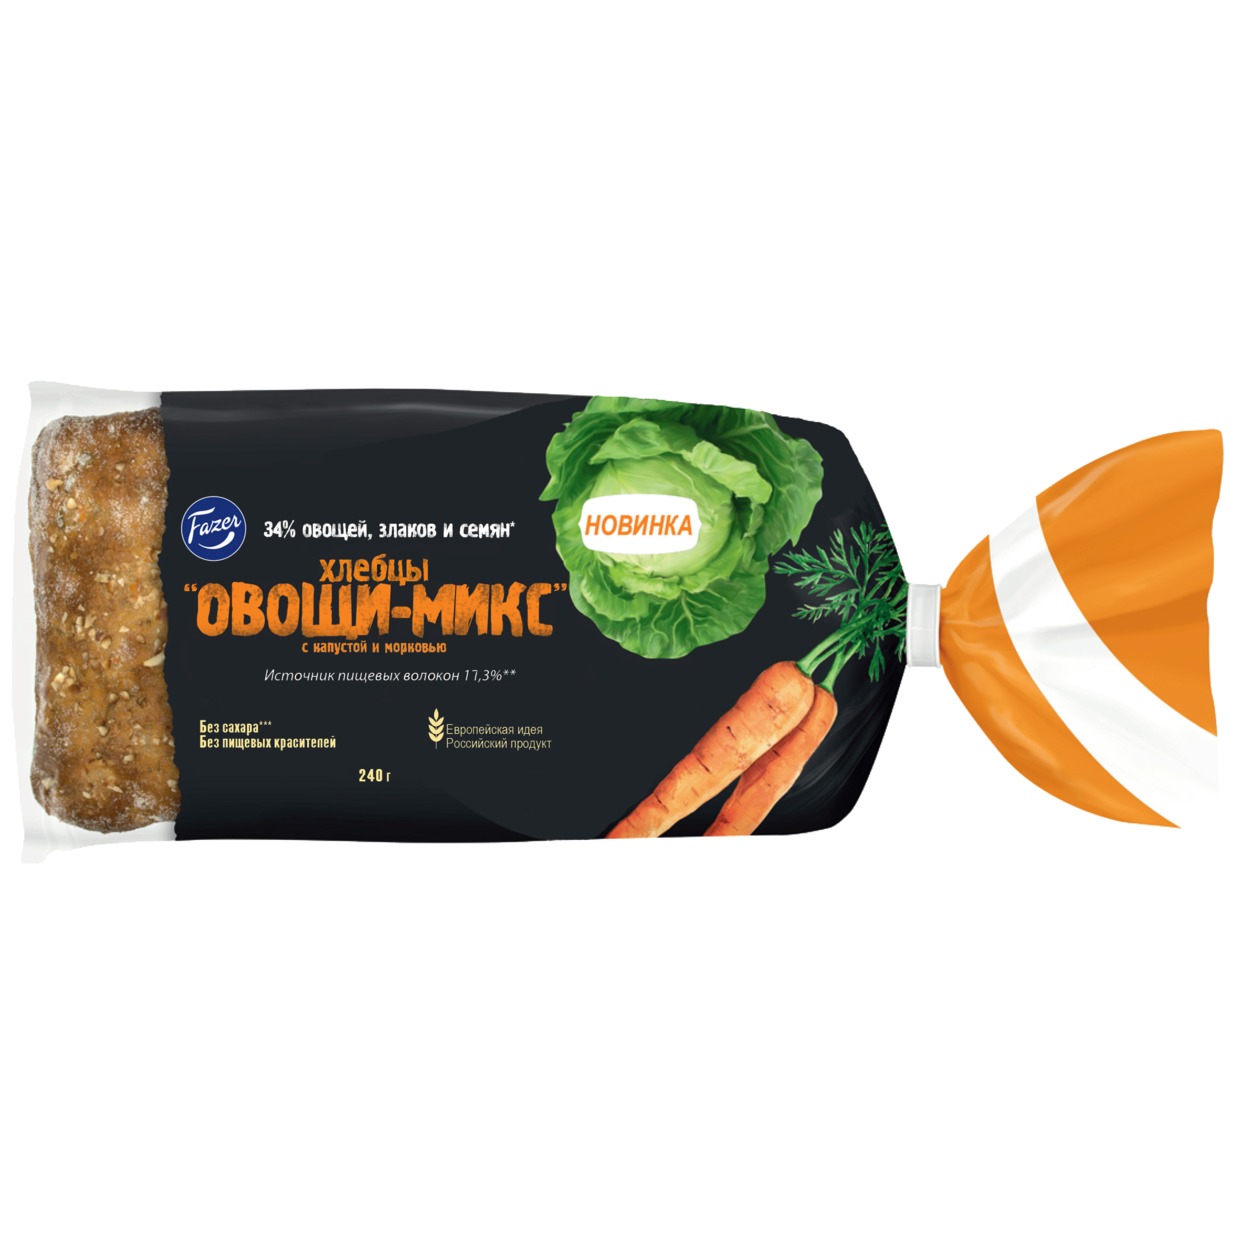 Хлебцы Fazer Овощи-Микс c капустой и морковью 4 шт.*60 г 240 г по акции в Пятерочке